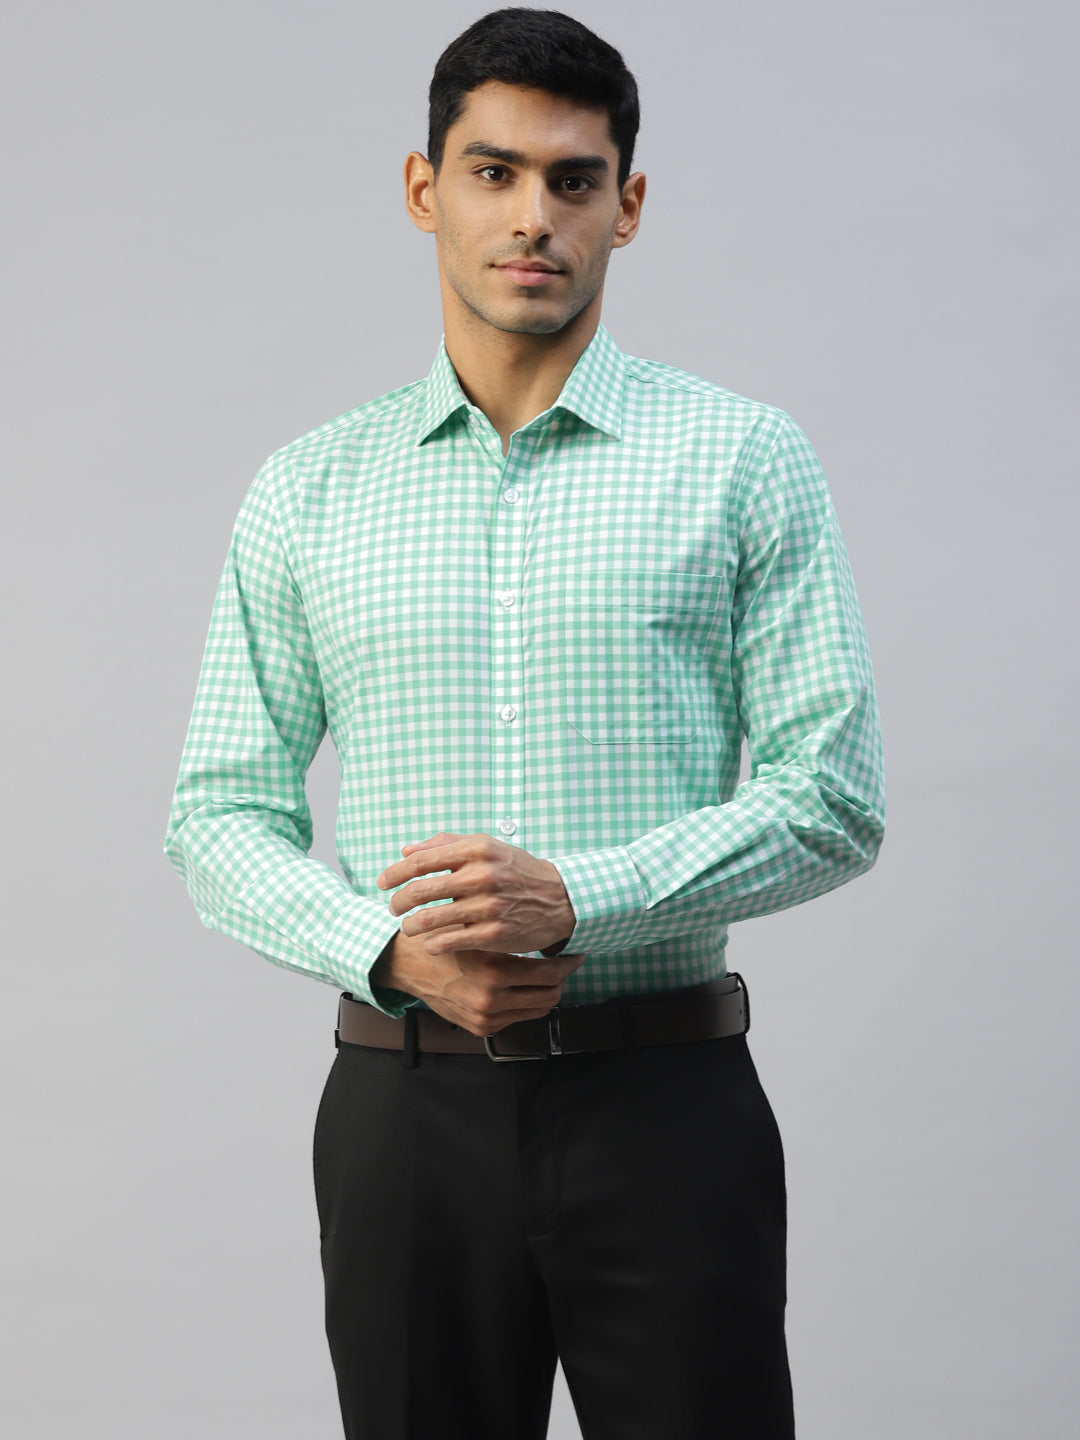 Don Vino Men's Light Green Checks Formal Shirt